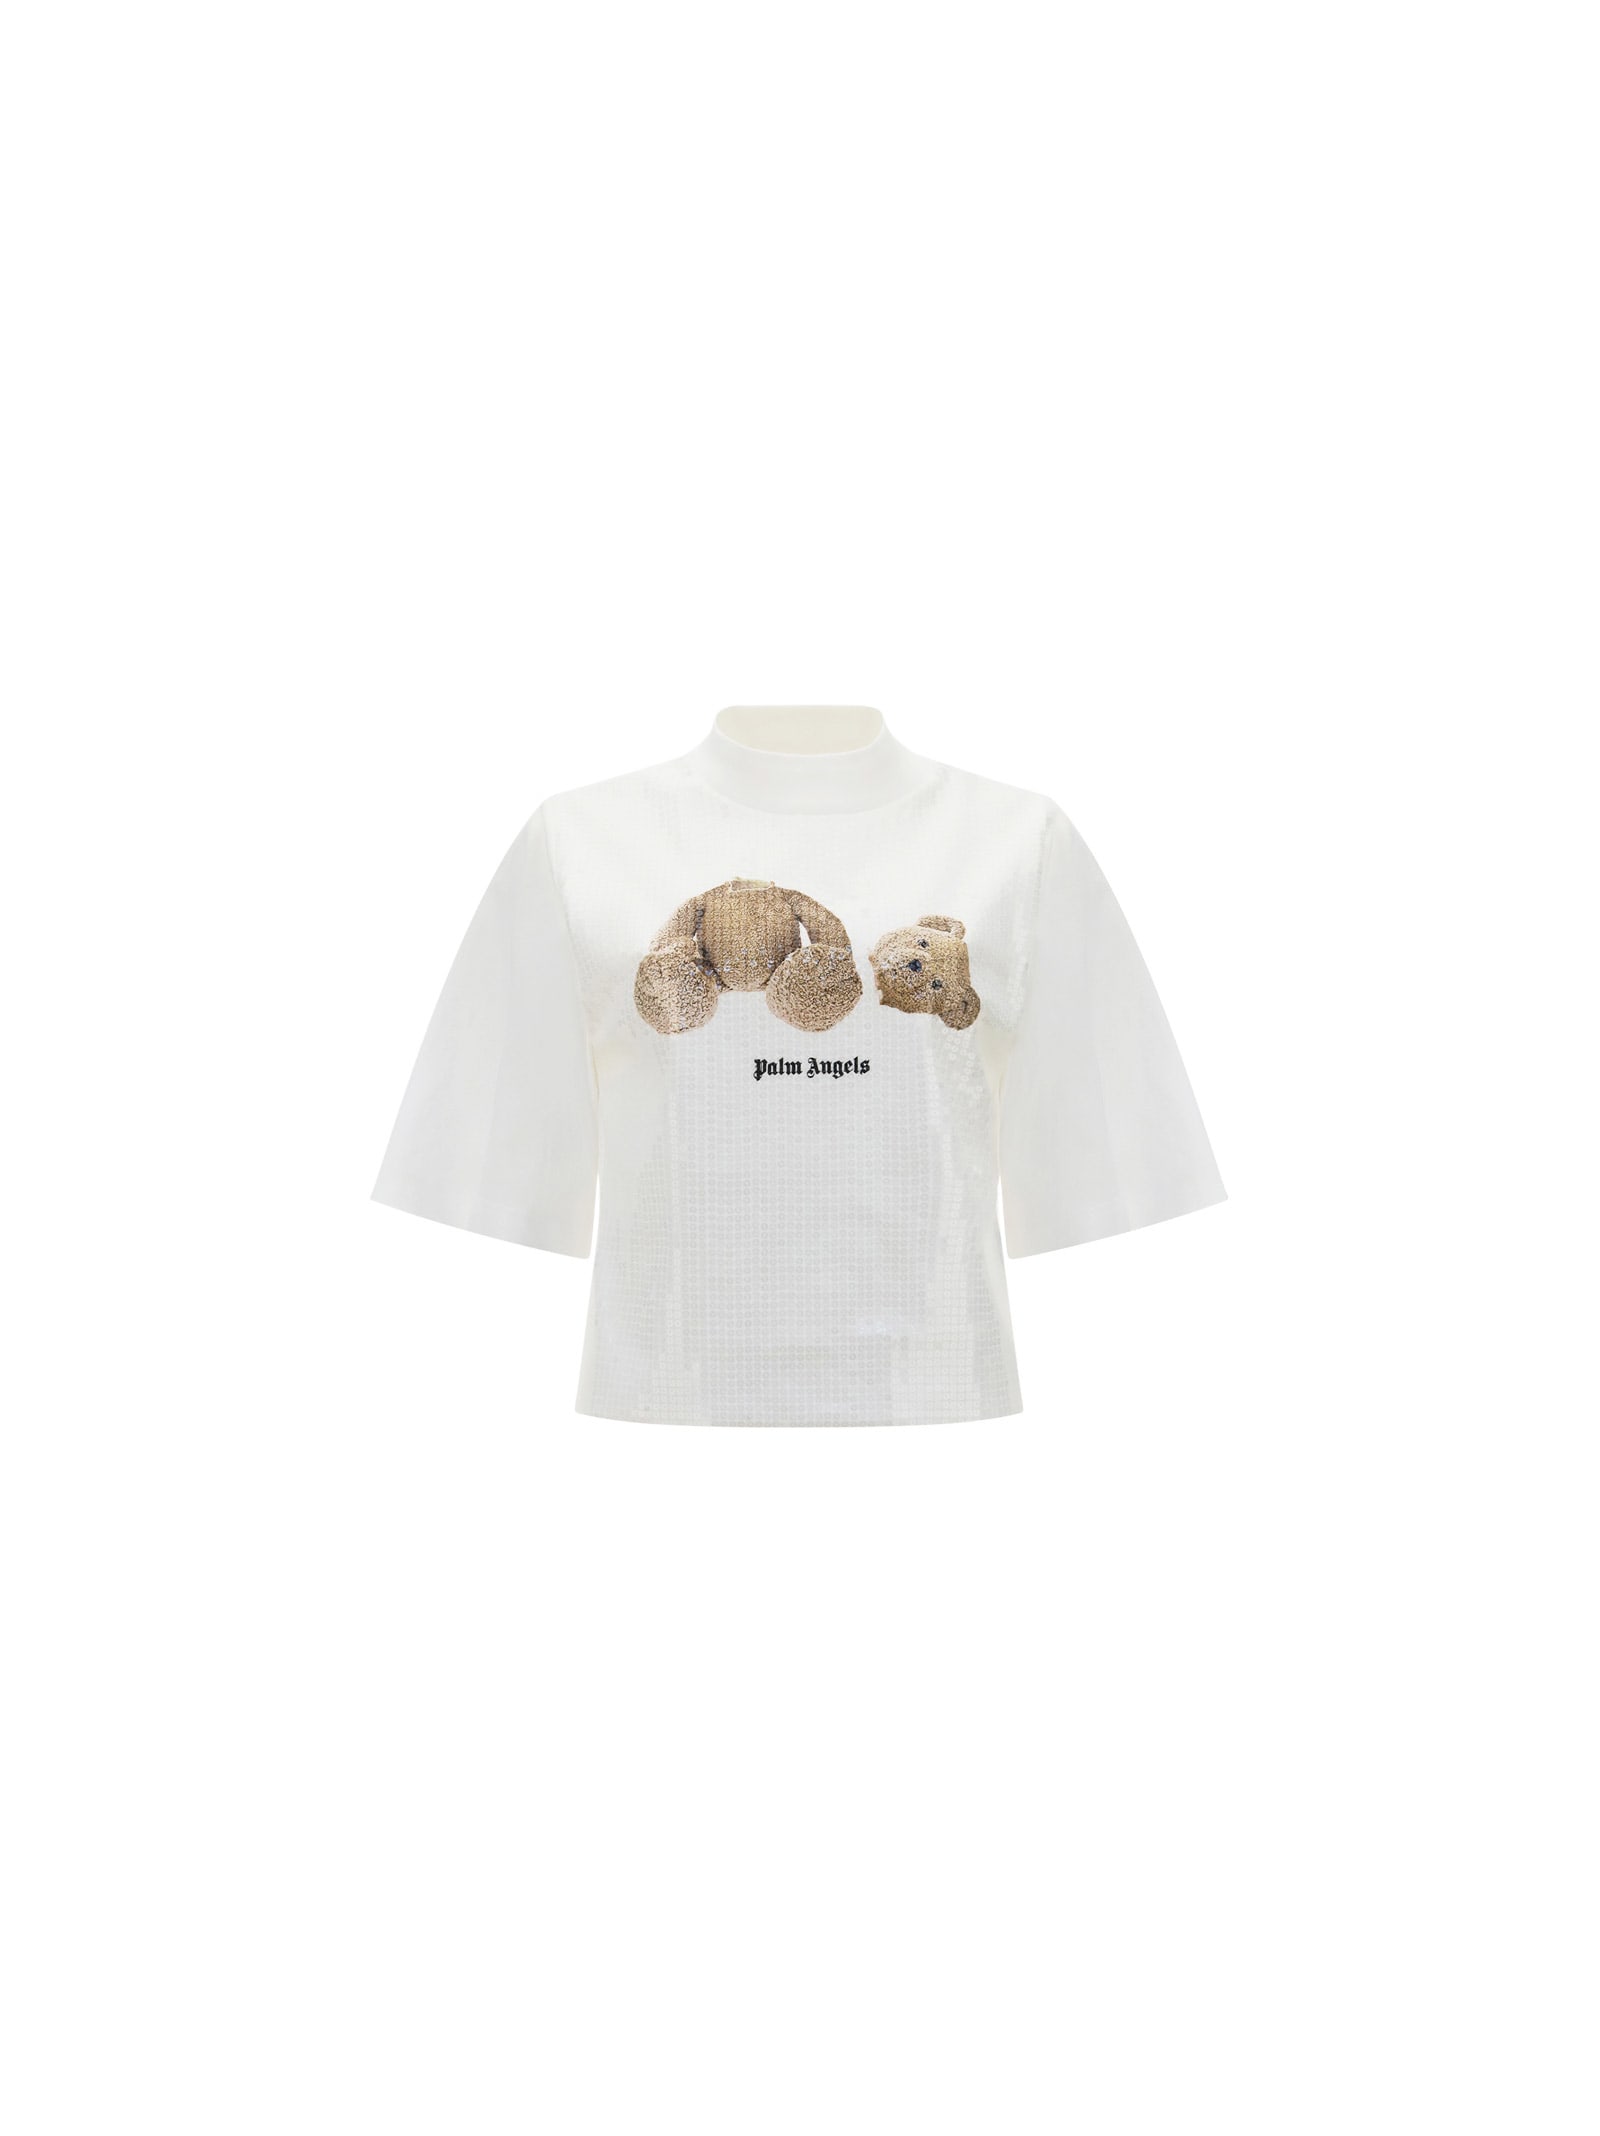 Palm Angels Bear Sequins T-shirt